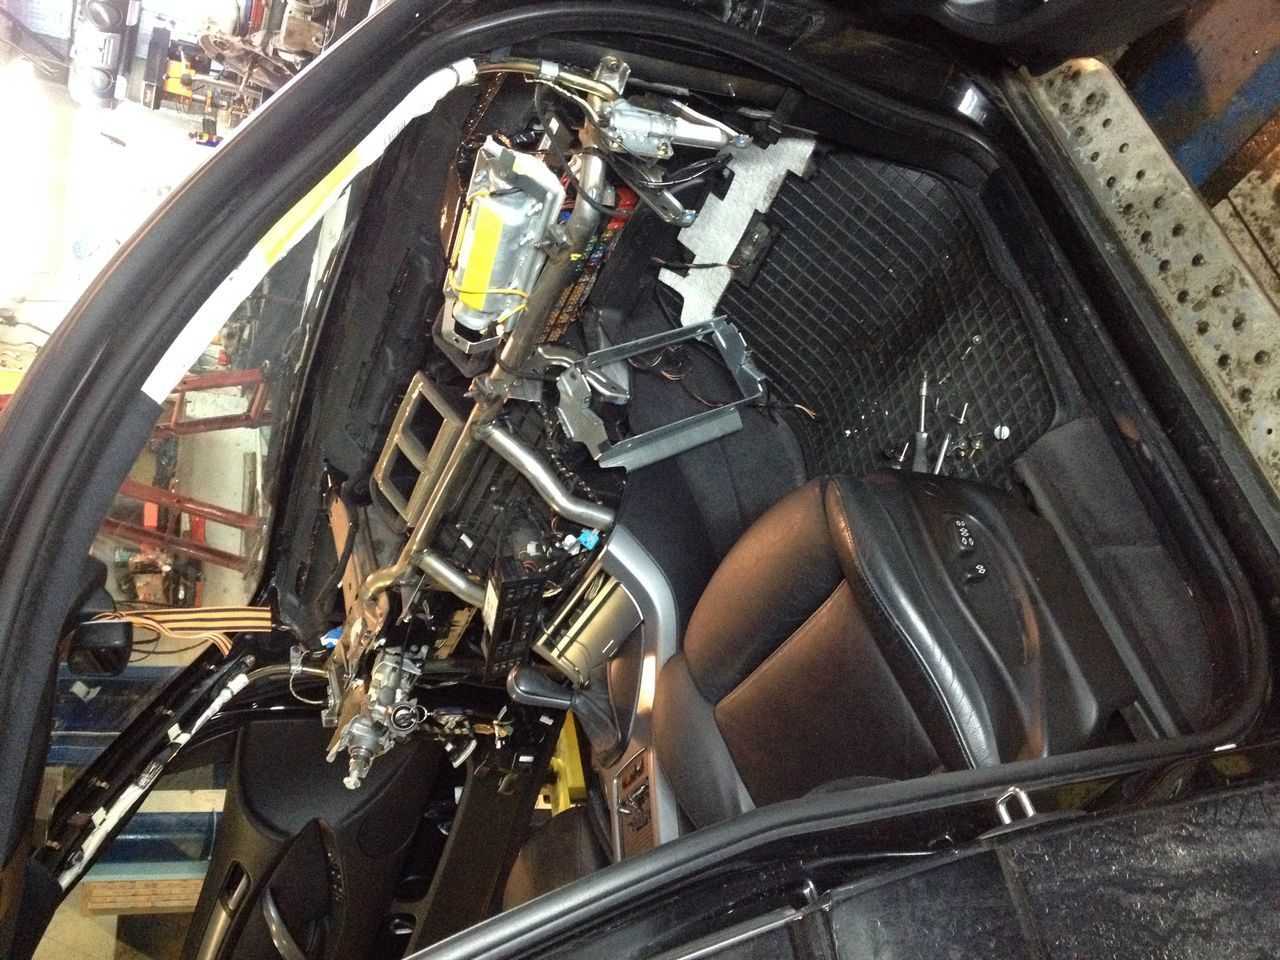 Как появился BMW X5 E53 возможные проблемы с двигателями кузовом трансмиссией салоном подвеской отзывы владельцев